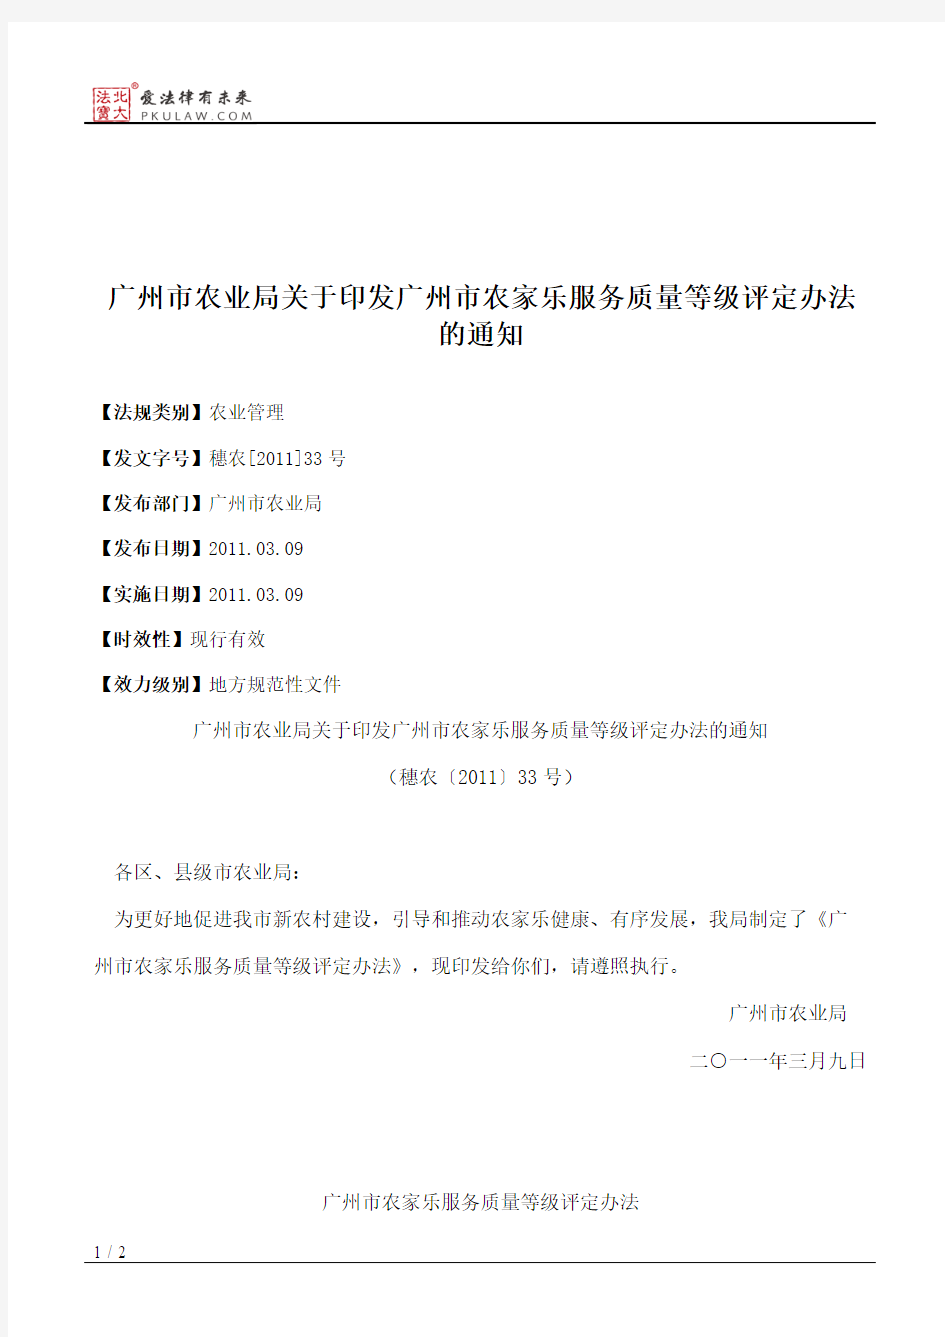 广州市农业局关于印发广州市农家乐服务质量等级评定办法的通知